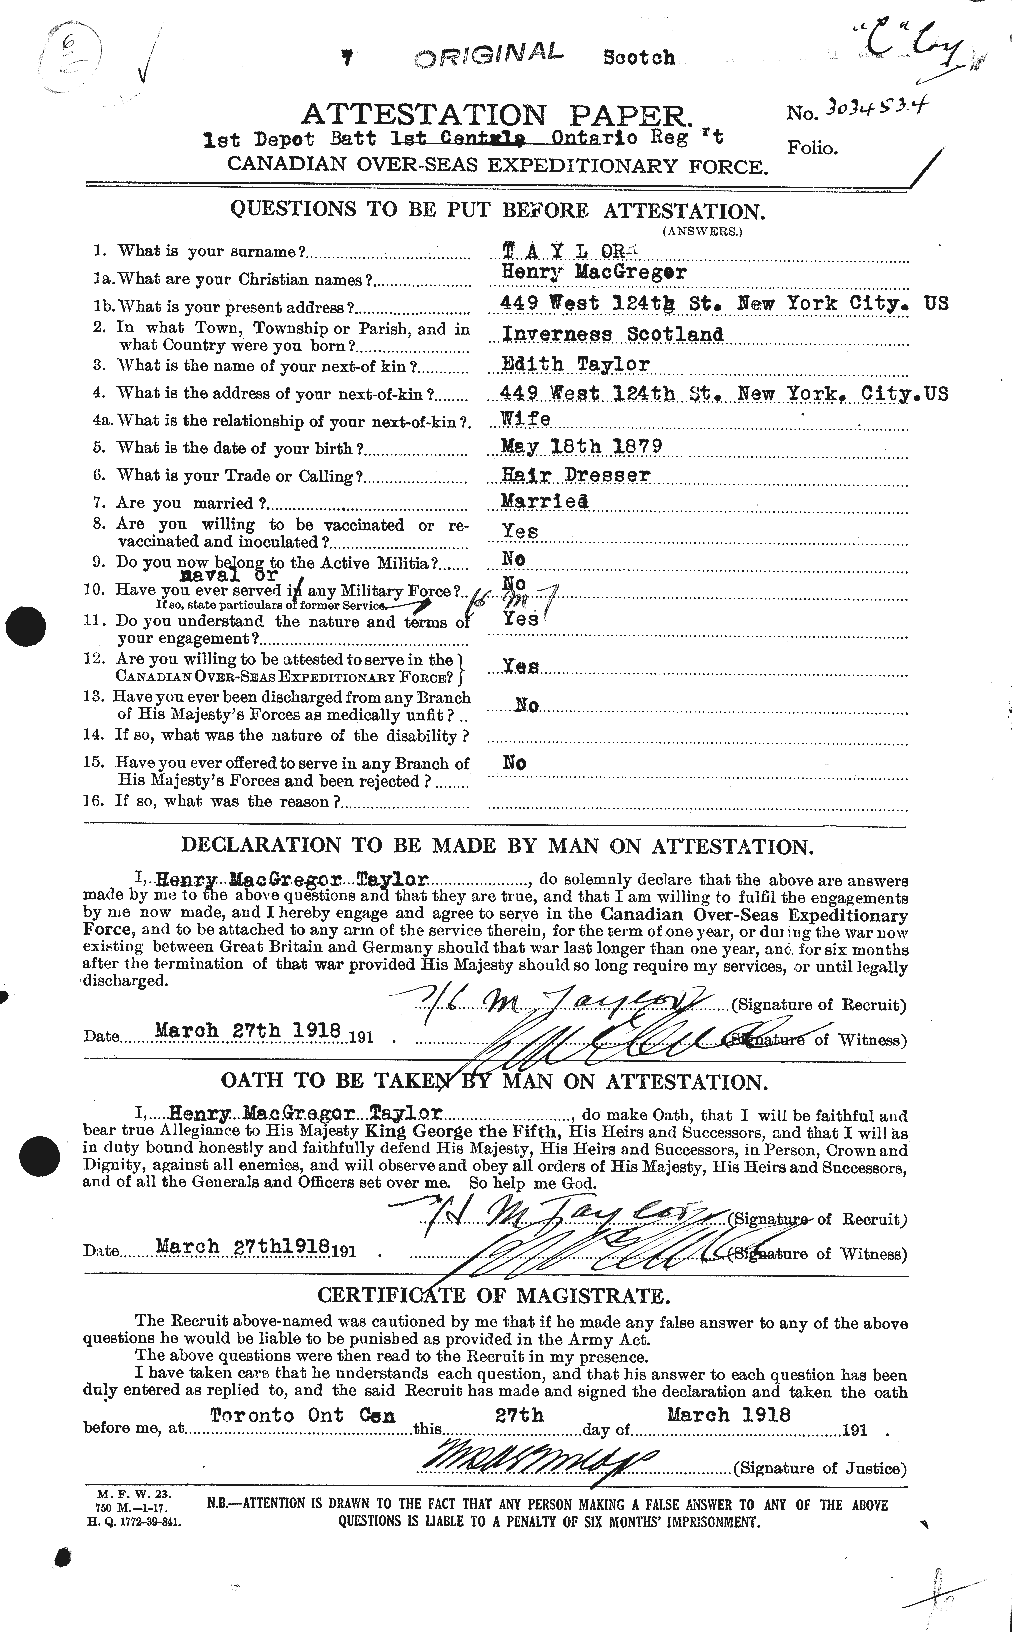 Dossiers du Personnel de la Première Guerre mondiale - CEC 626549a